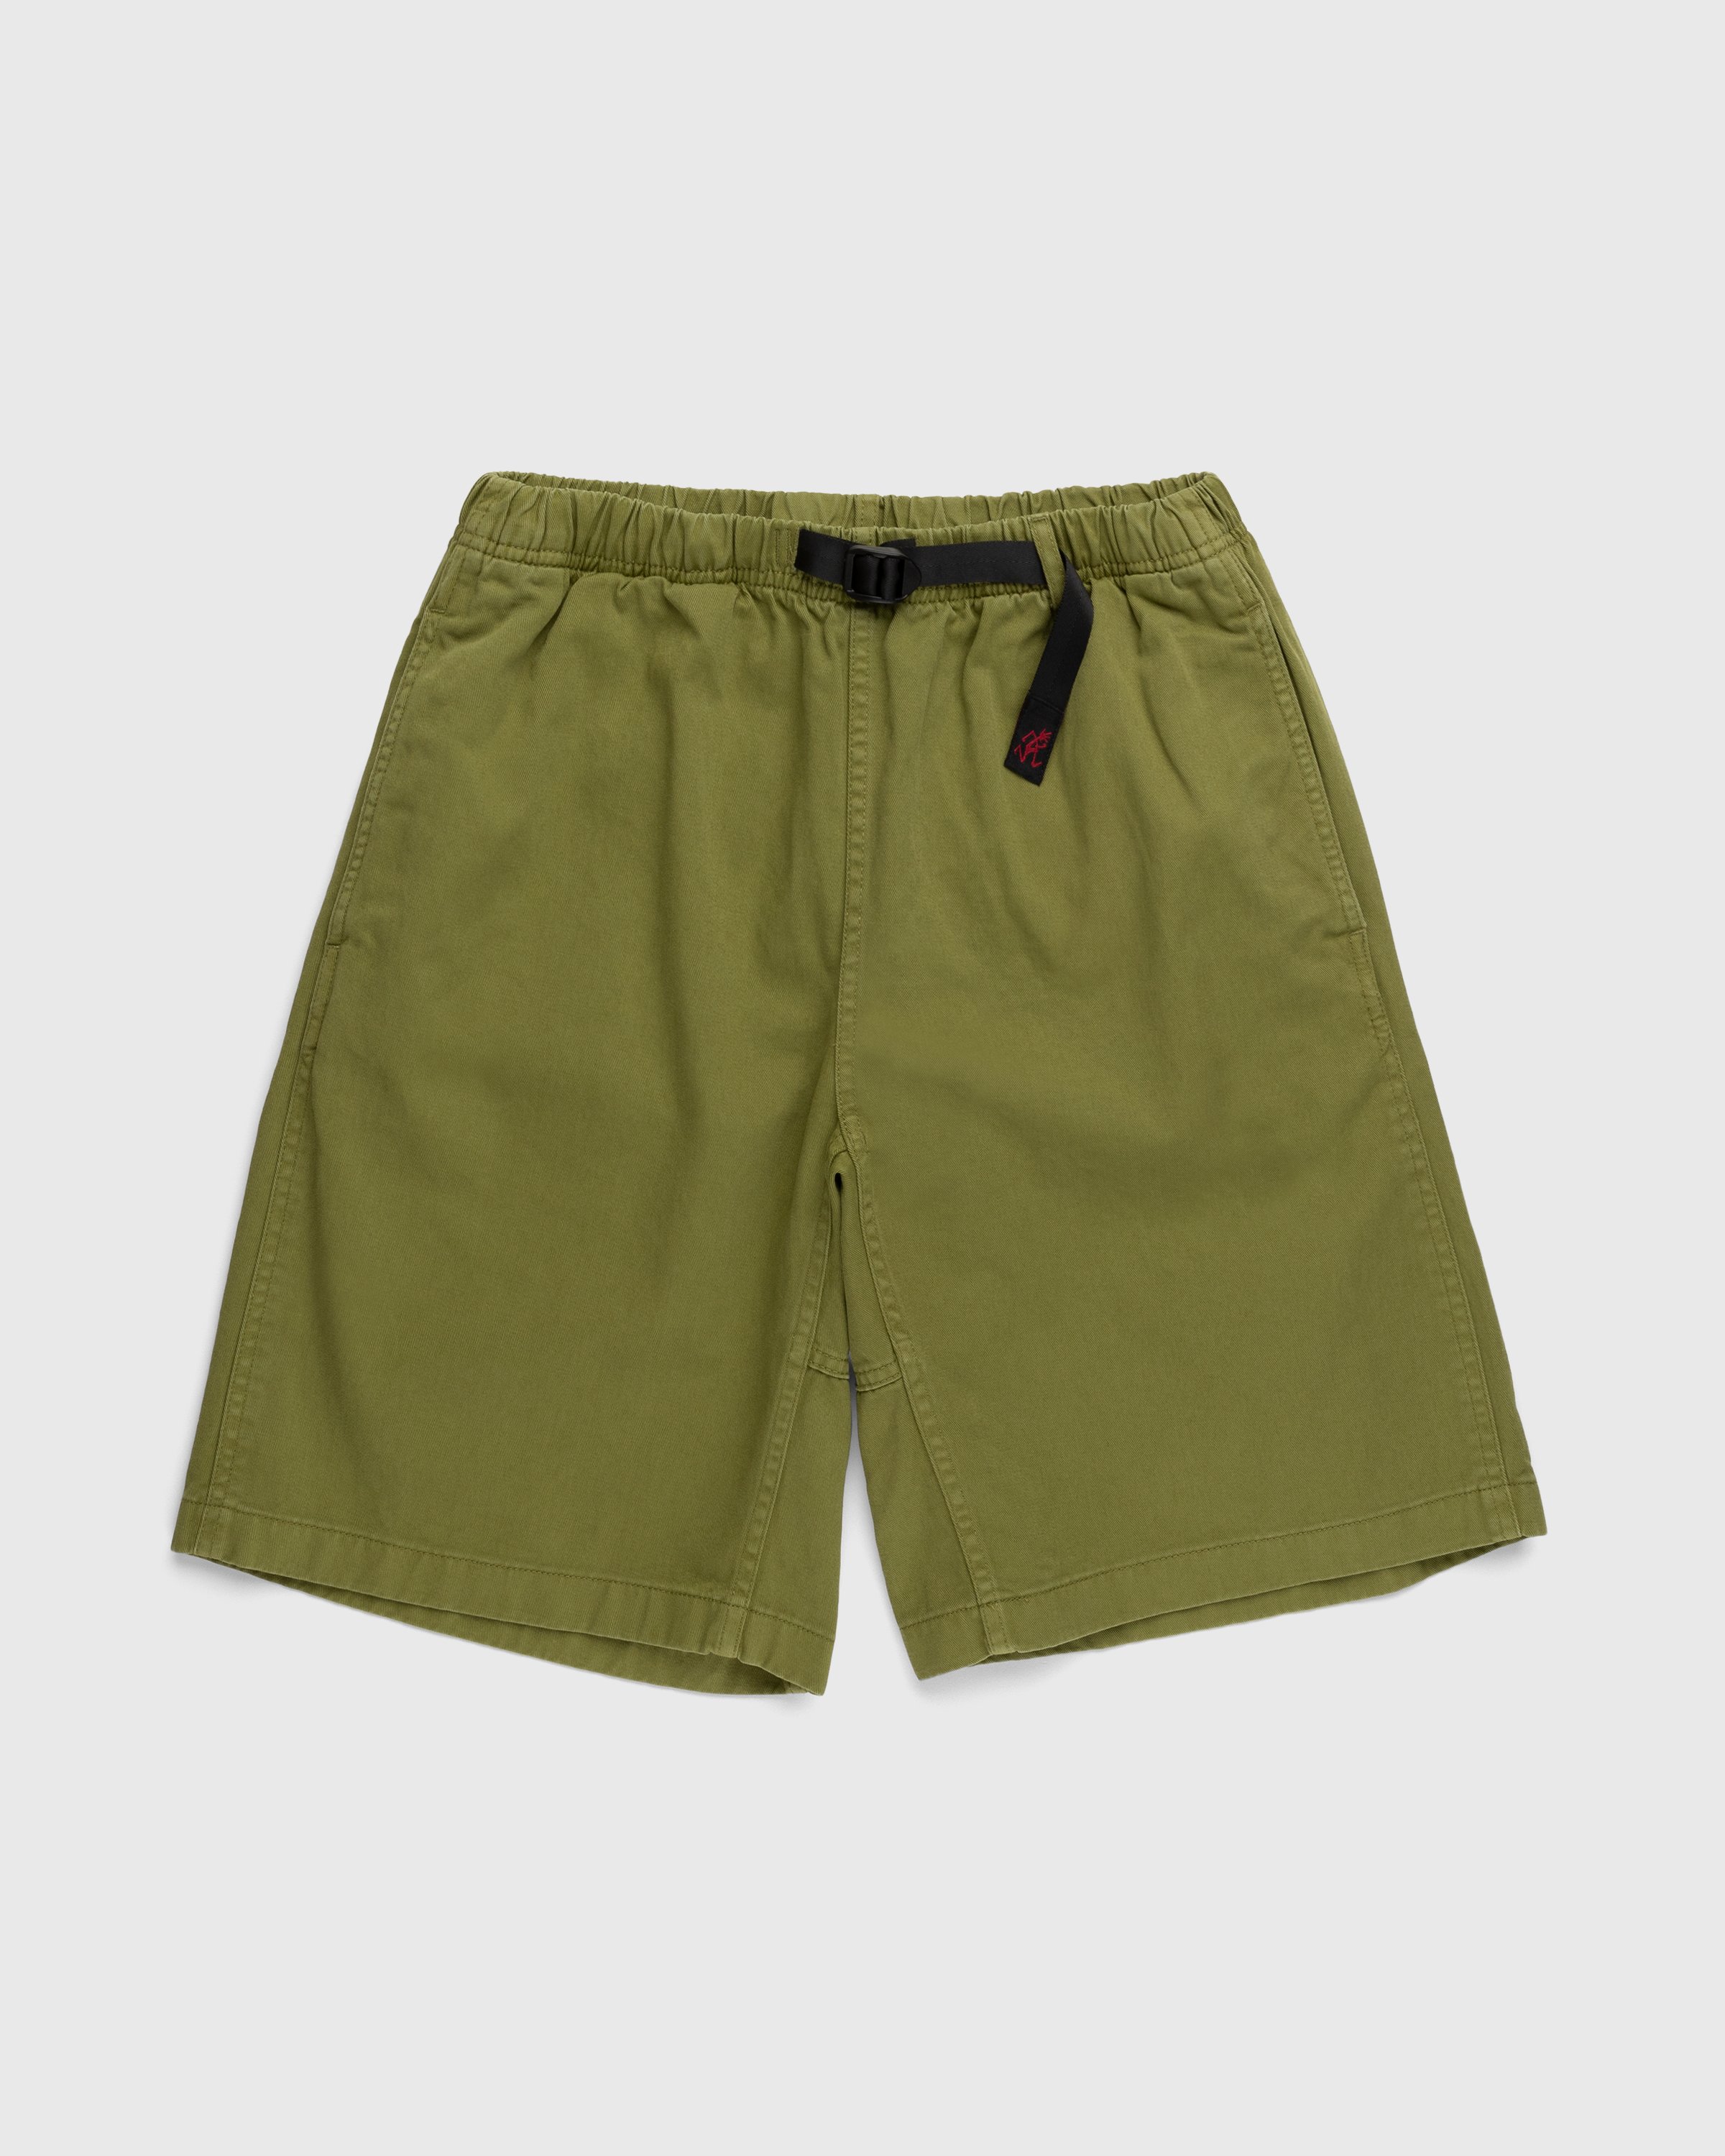 Gramicci - G-Shorts Moss - Clothing - Green - Image 1